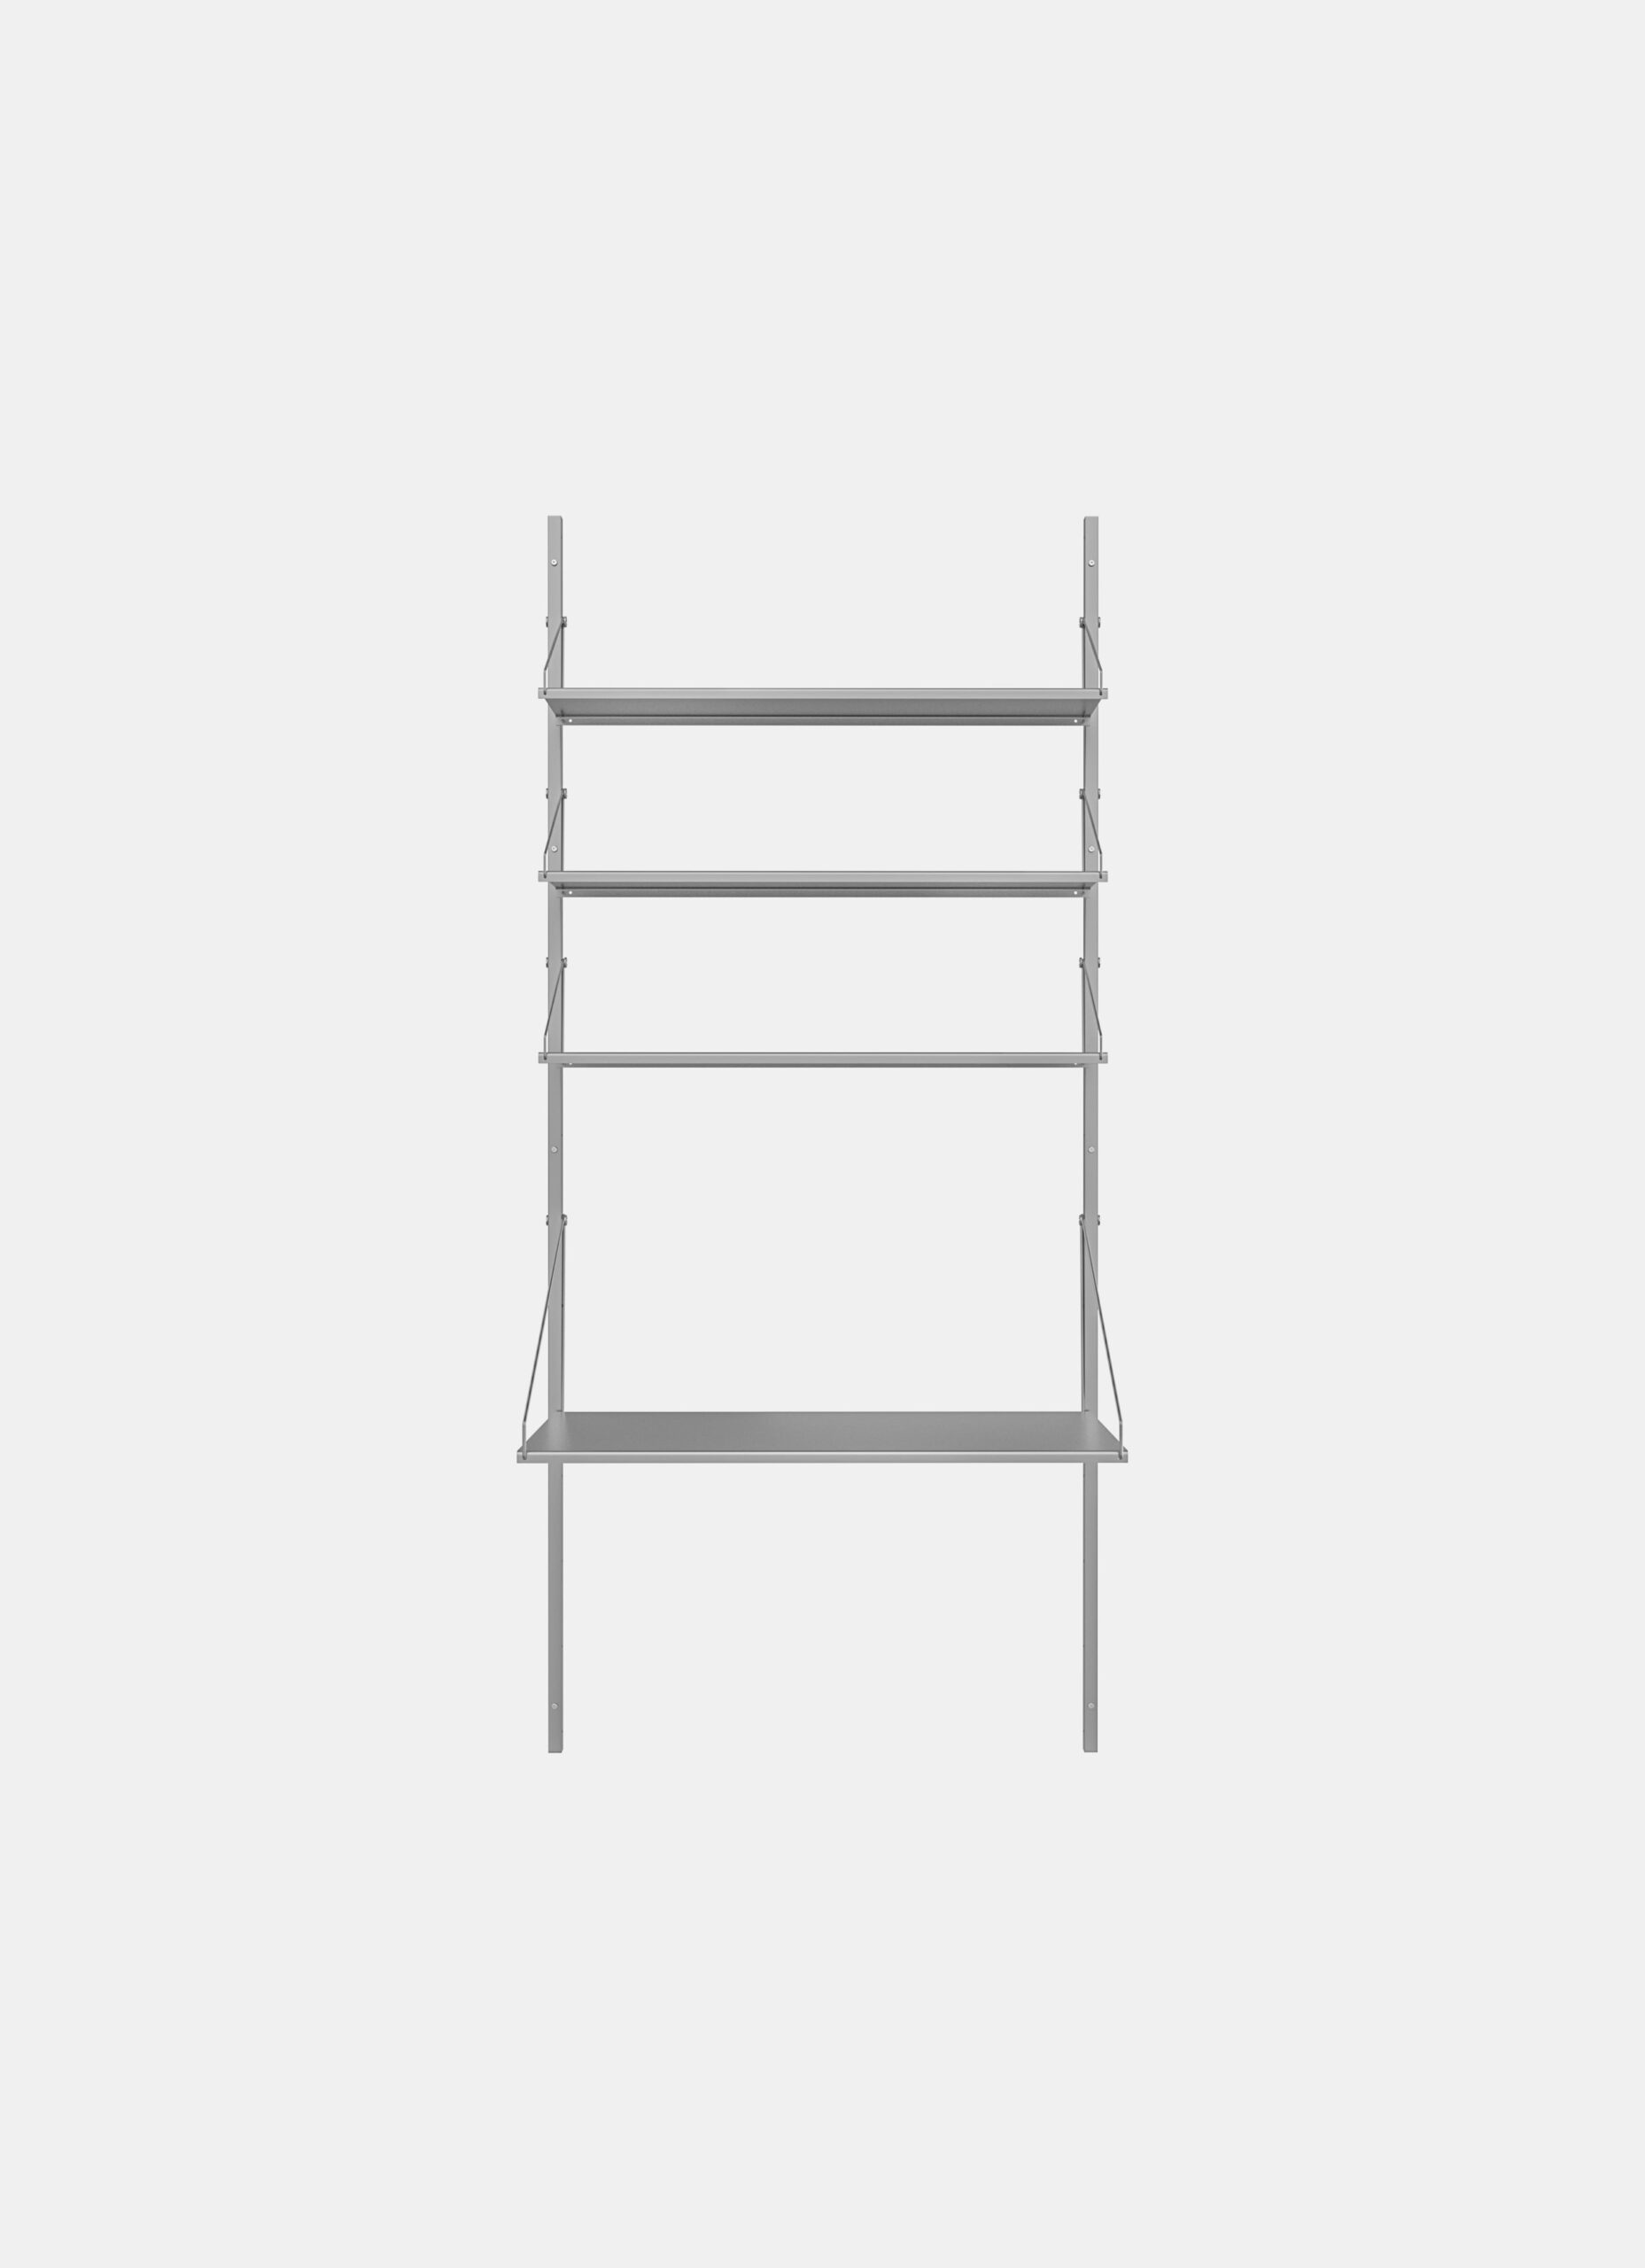 Frama - Shelf Library - Stainless Steel - H1852 - Desk Section